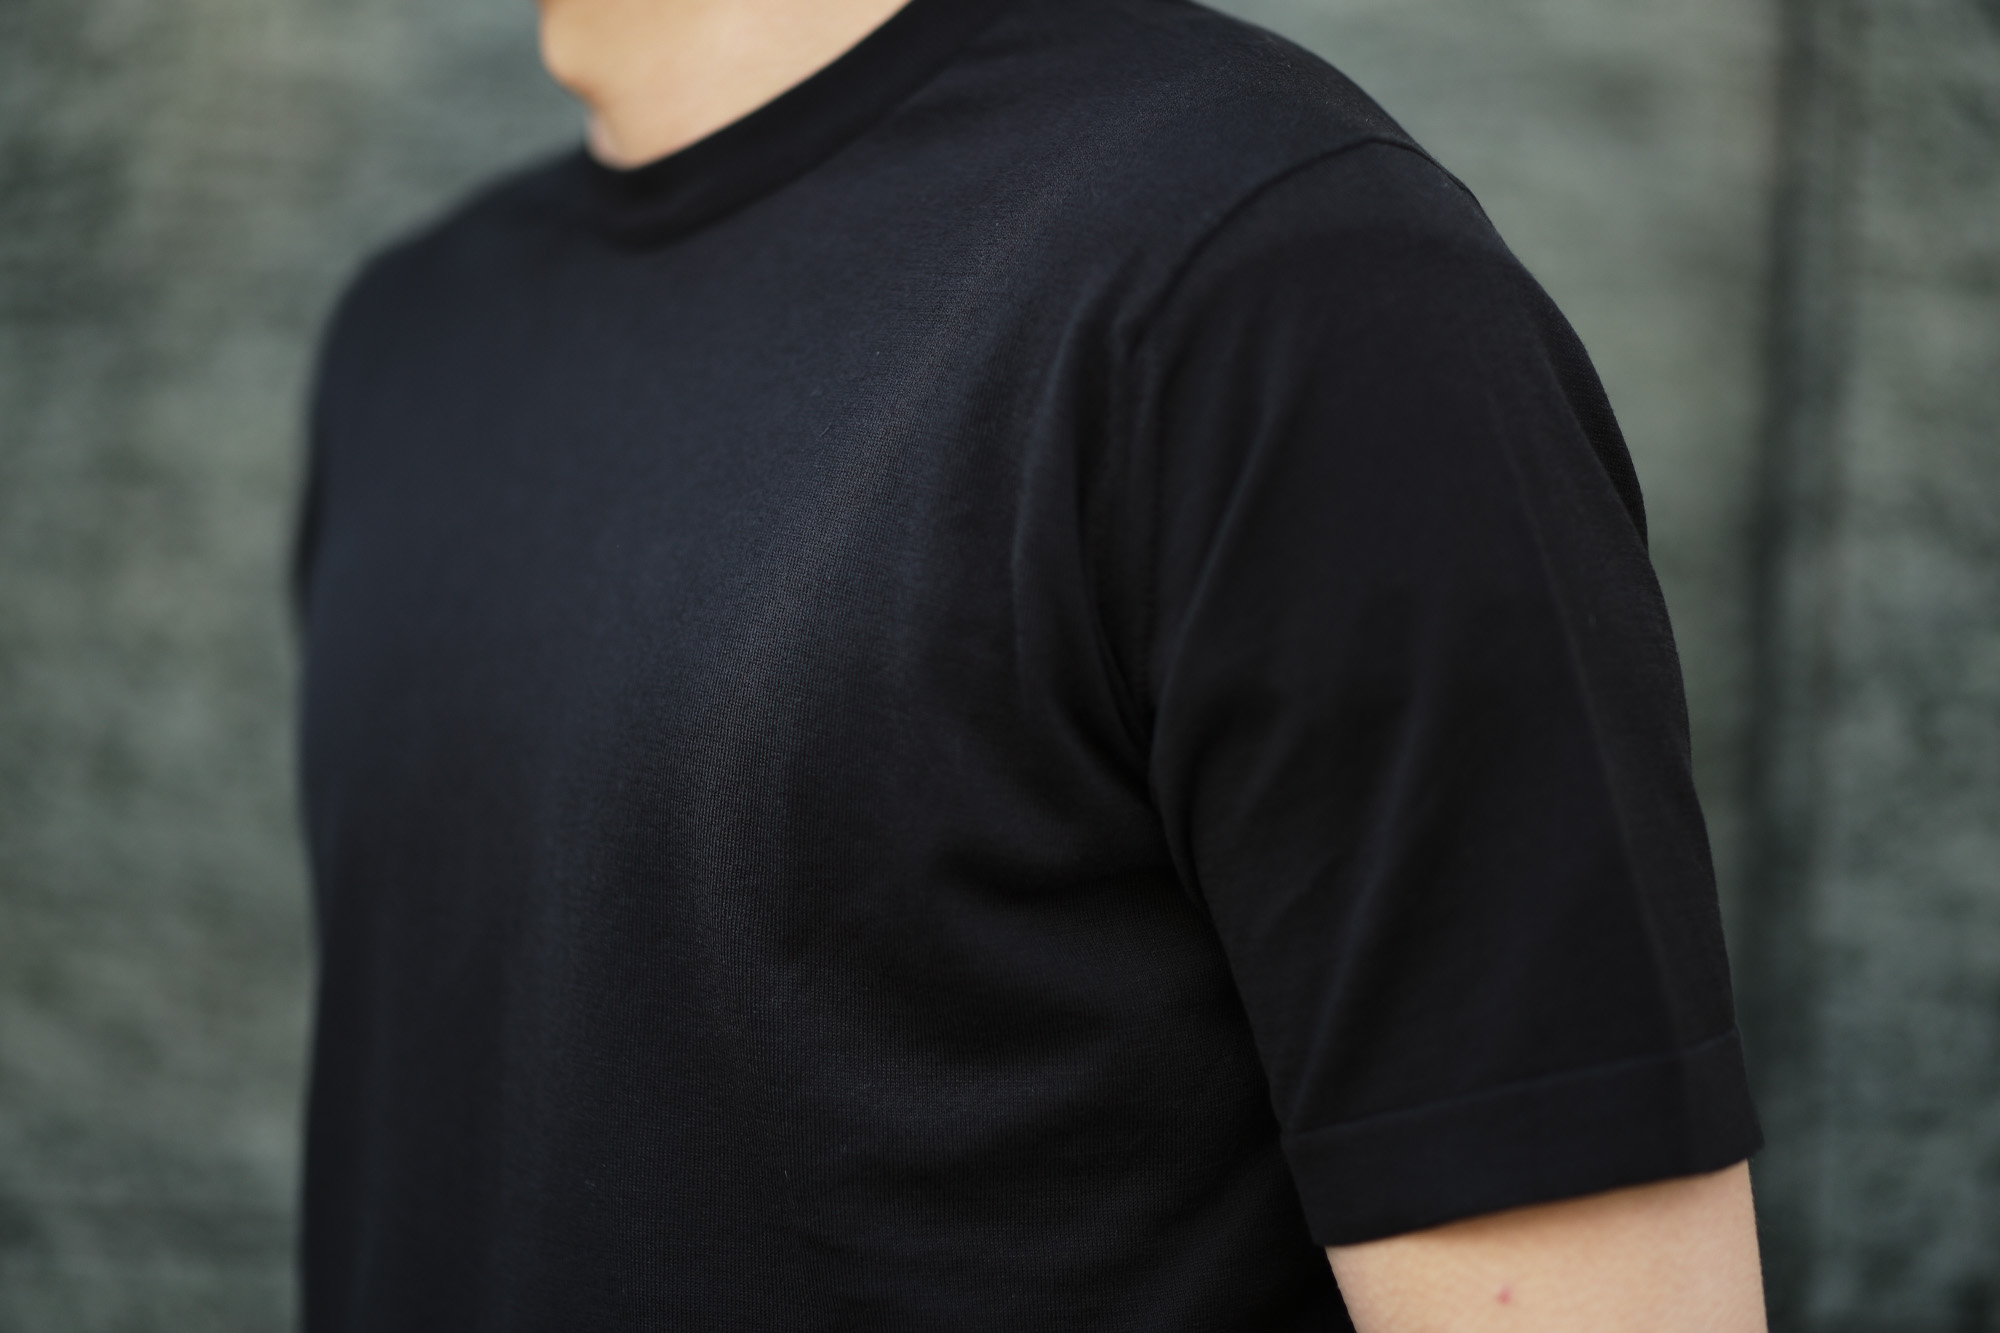 JOHN SMEDLEY(ジョンスメドレー) LORCA (ロルカ) SEA ISLAND COTTON (シーアイランドコットン) コットンニット Tシャツ BLACK (ブラック) Made in England (イギリス製) 2020 春夏新作 愛知 名古屋 altoediritto アルトエデリット